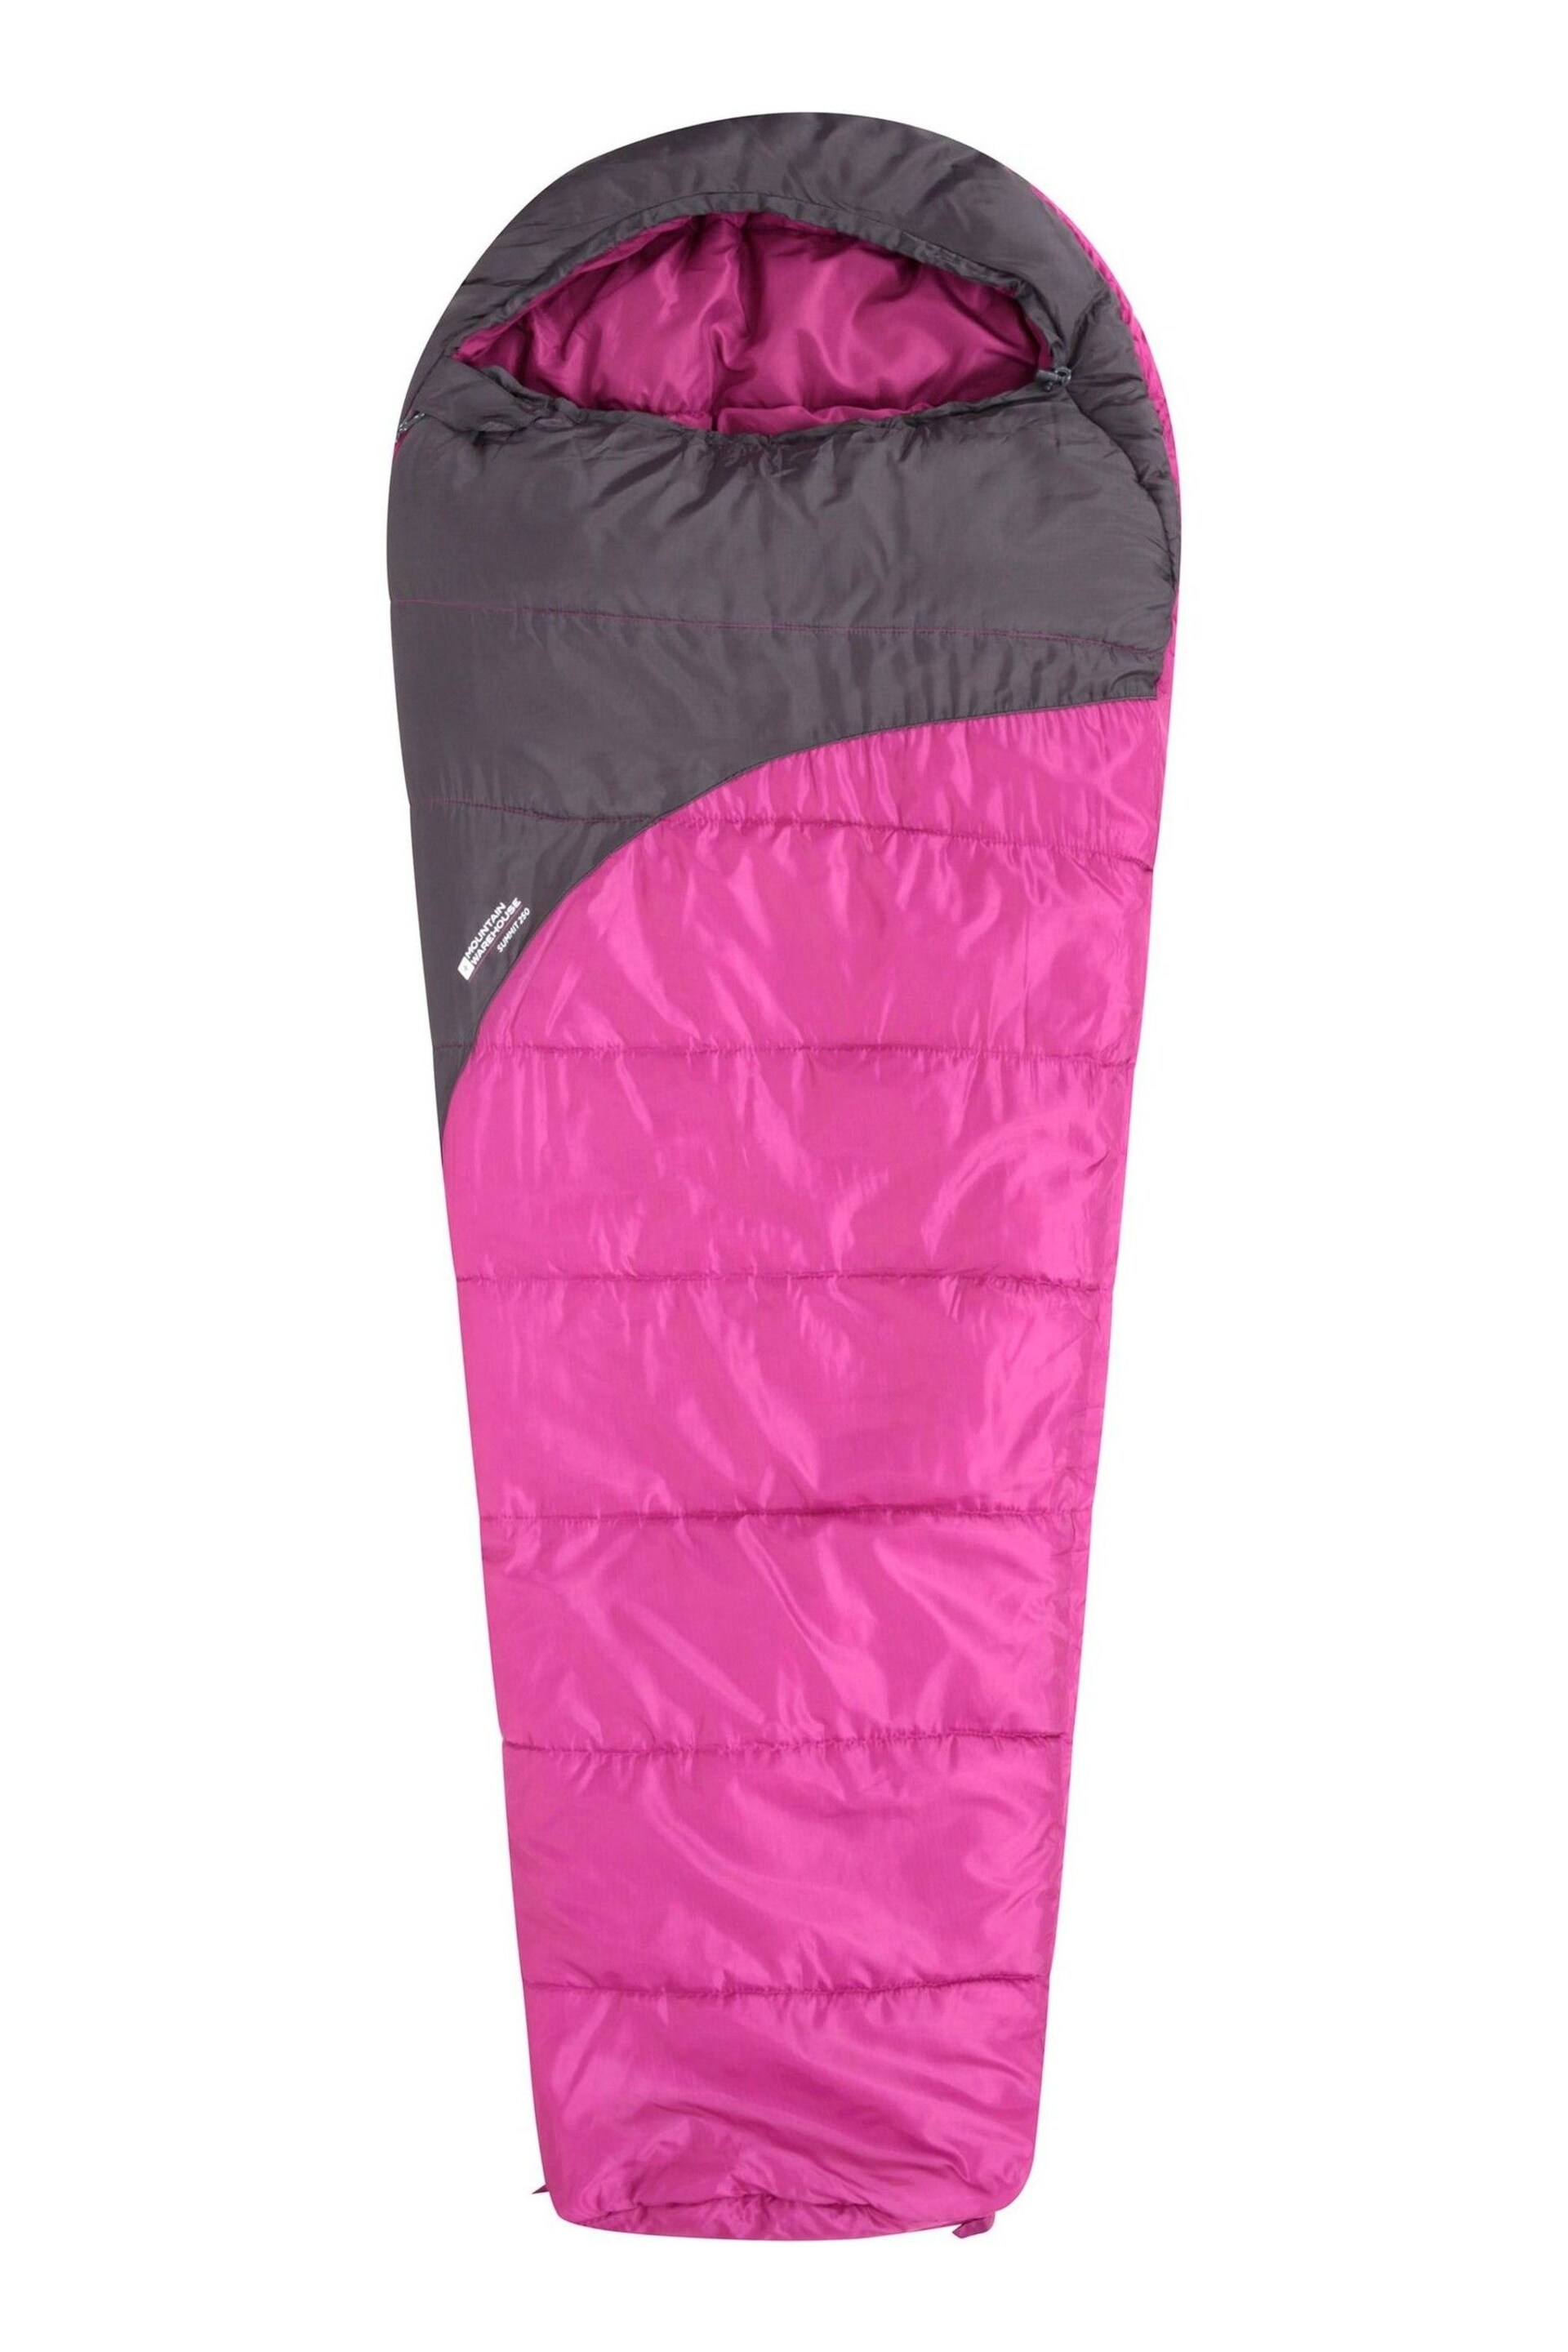 Mountain Warehouse Pink Summit 250 Sleeping Bag - Image 3 of 5